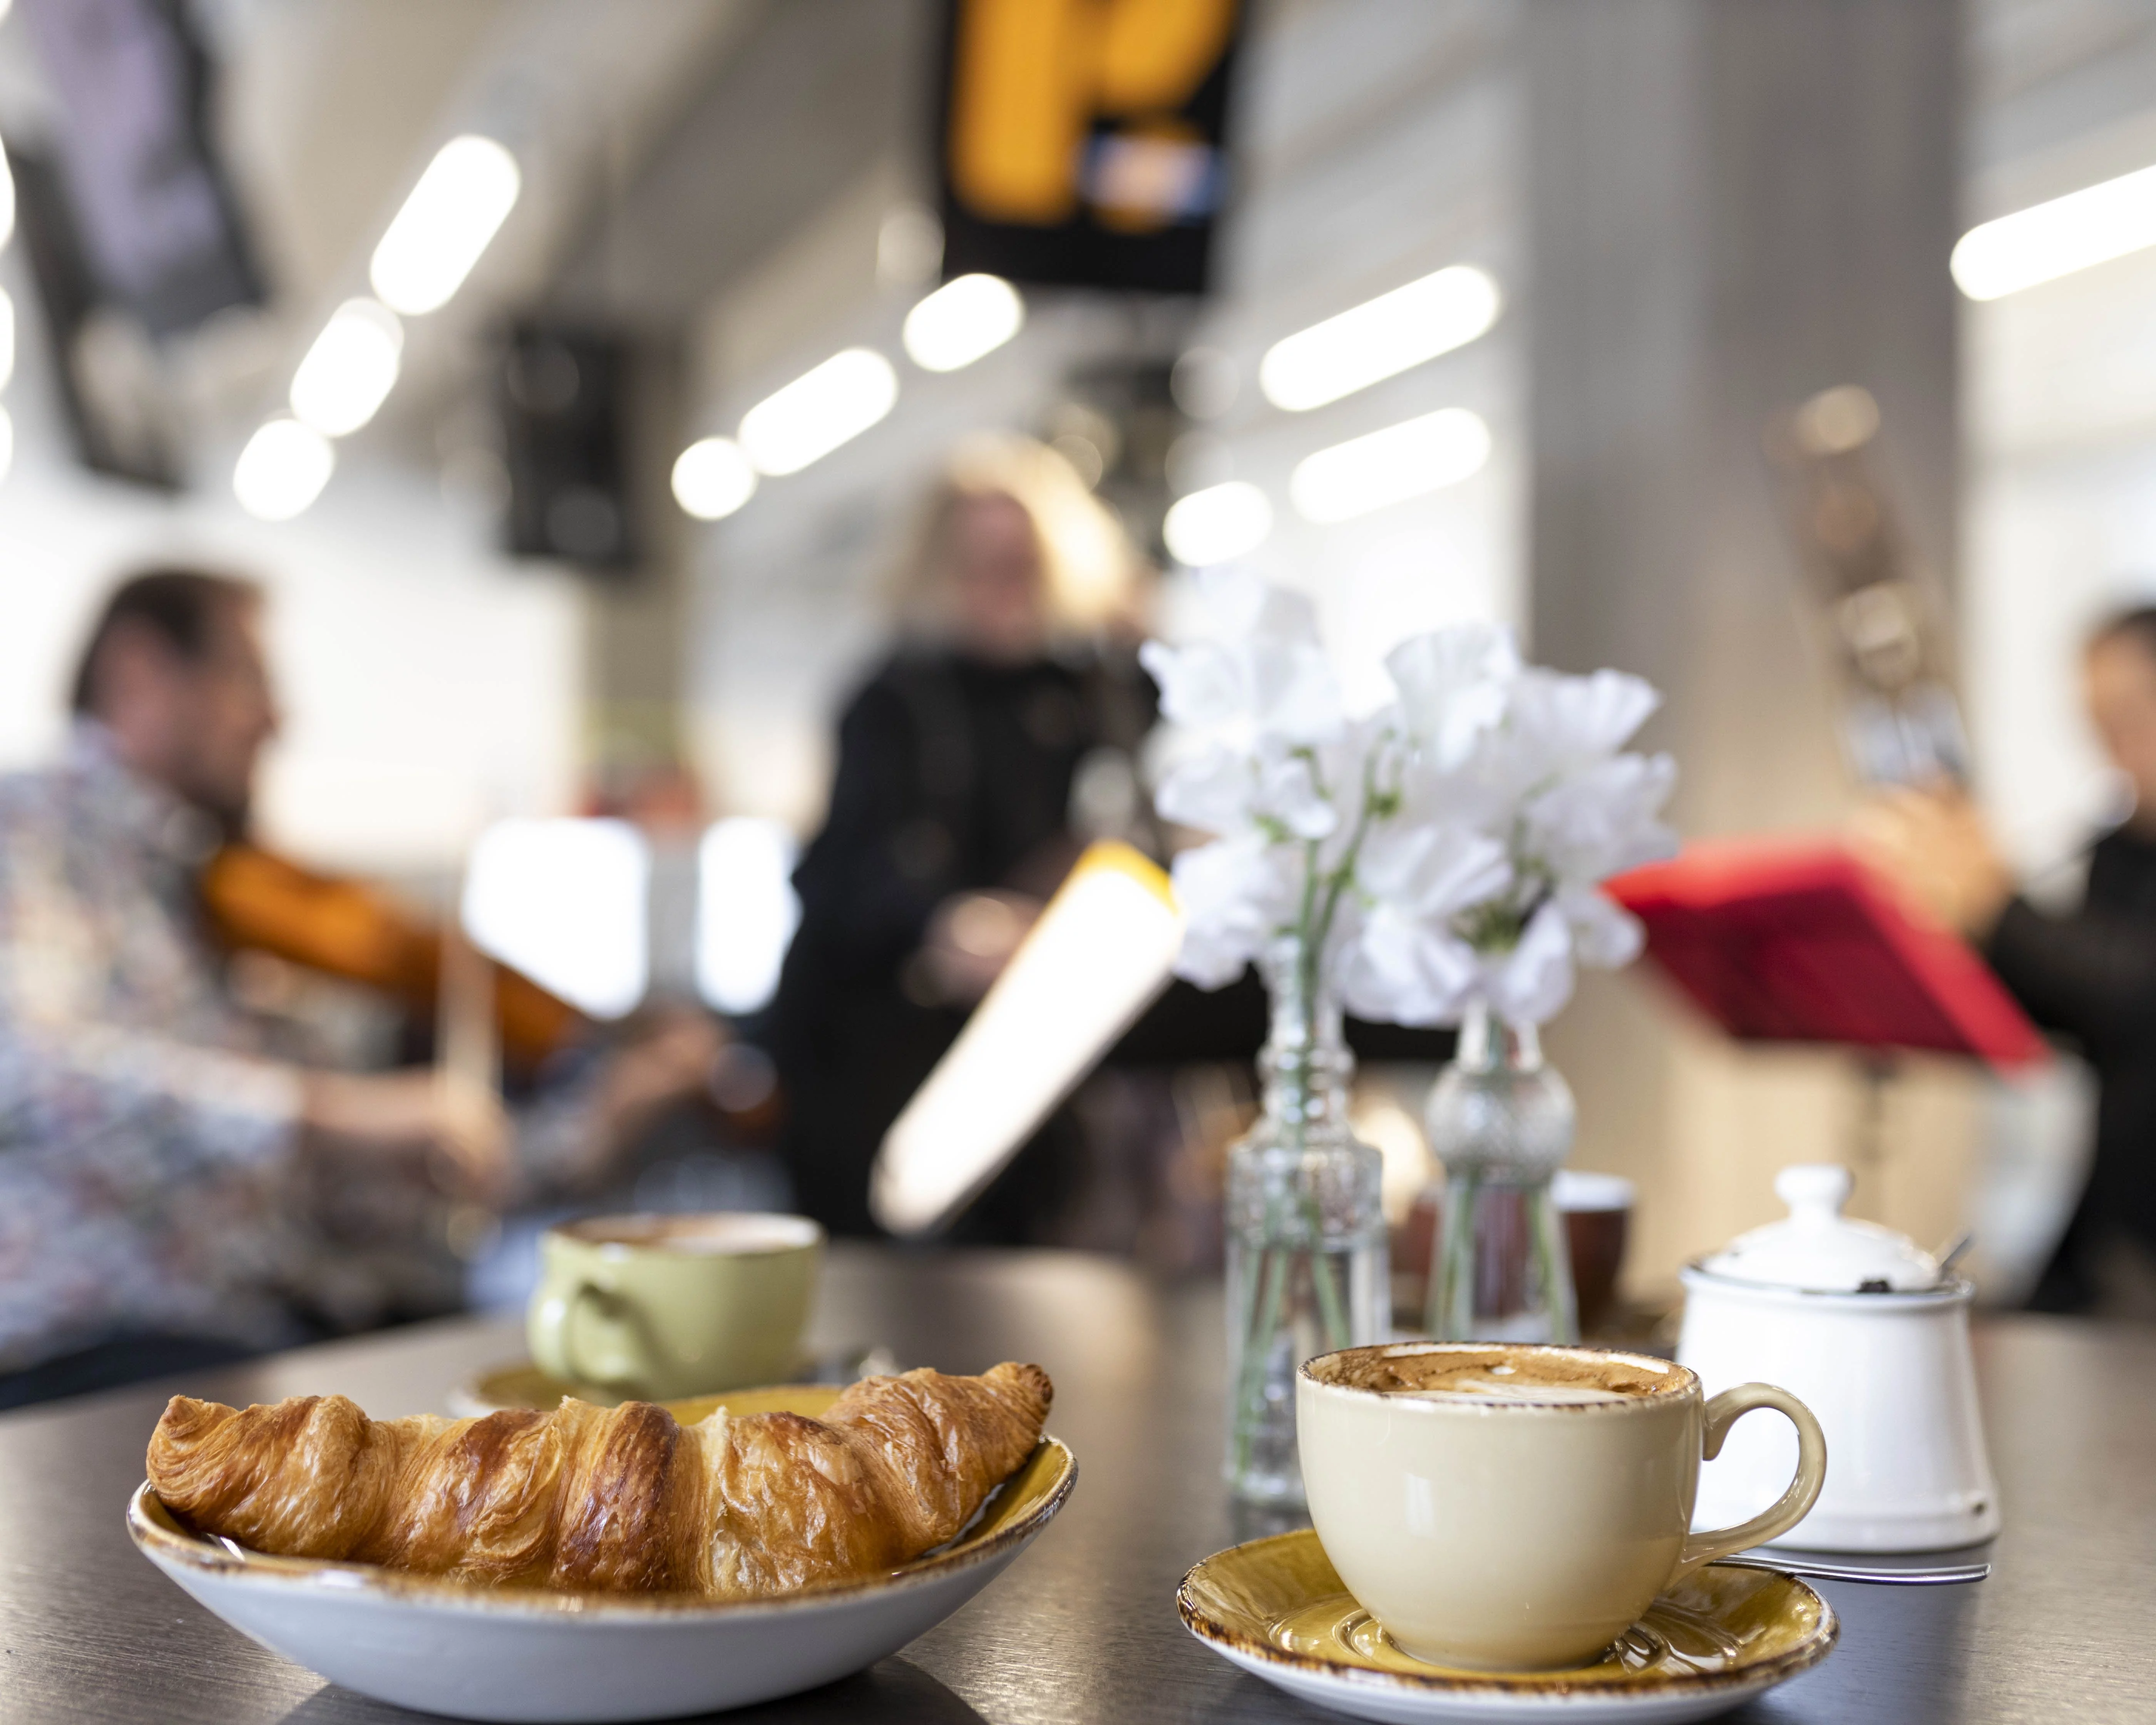 Croissant und Kaffee auf einem Tisch, im Hintergrund spielen Musiker